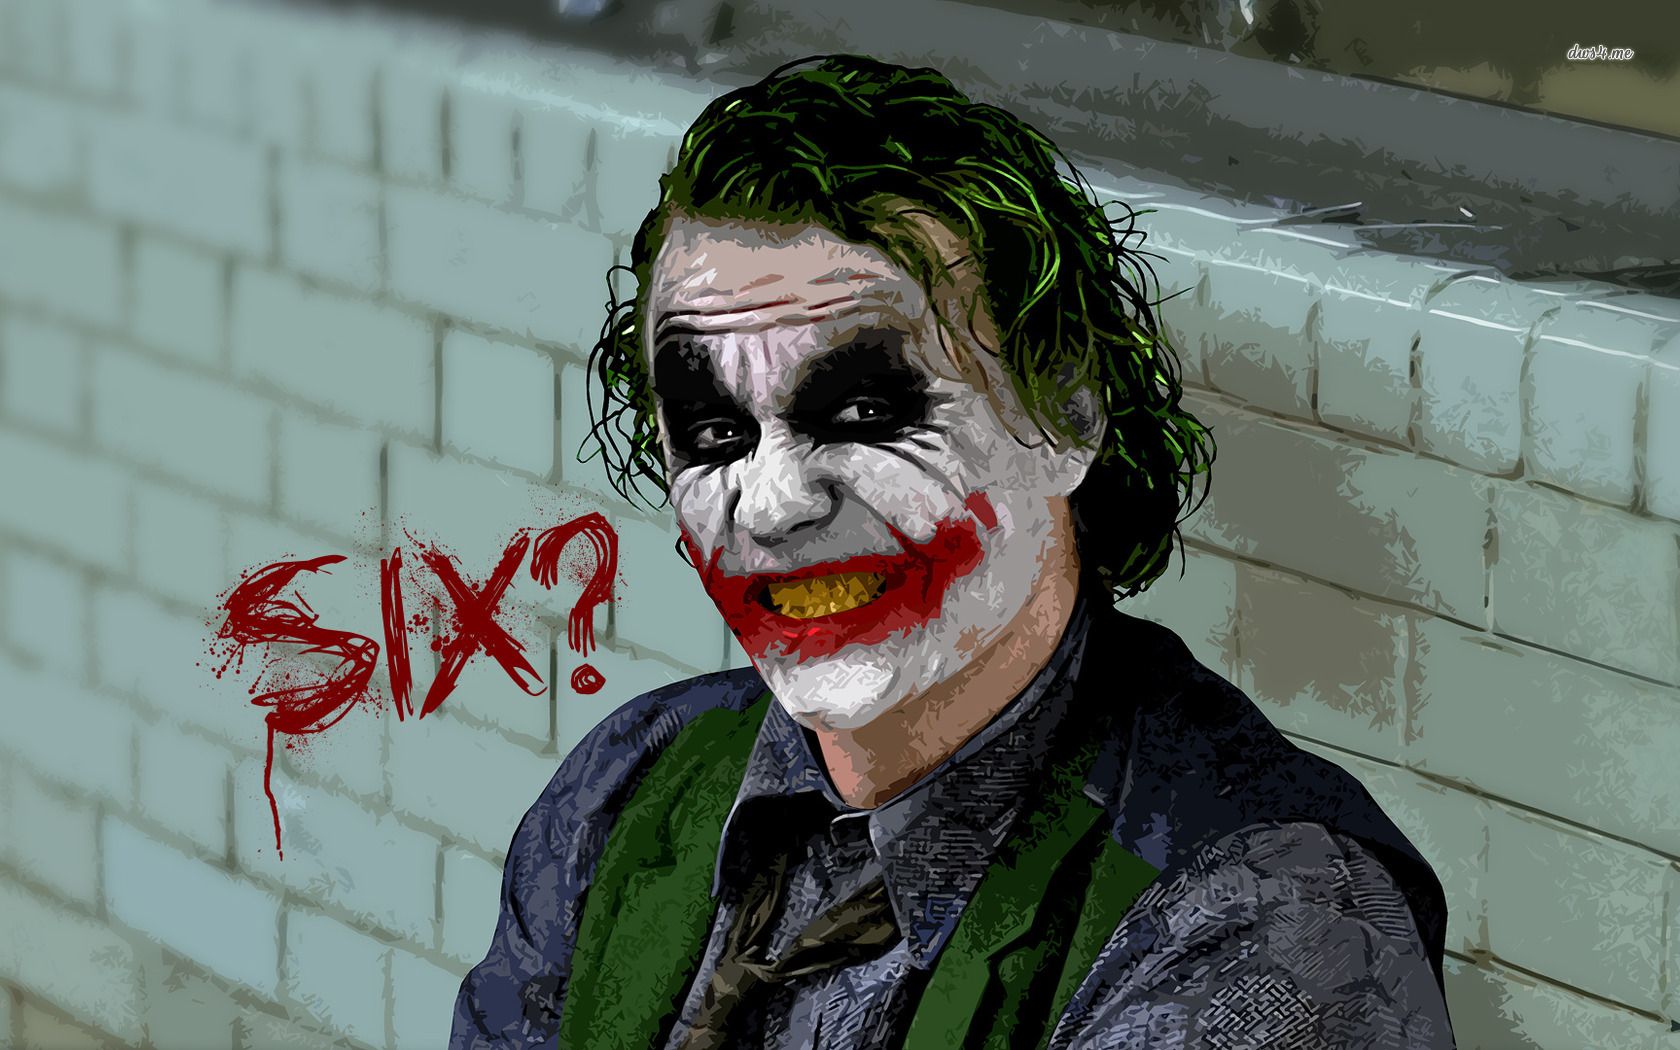 Joker - The Dark Knight wallpaper - Movie wallpapers - #10124